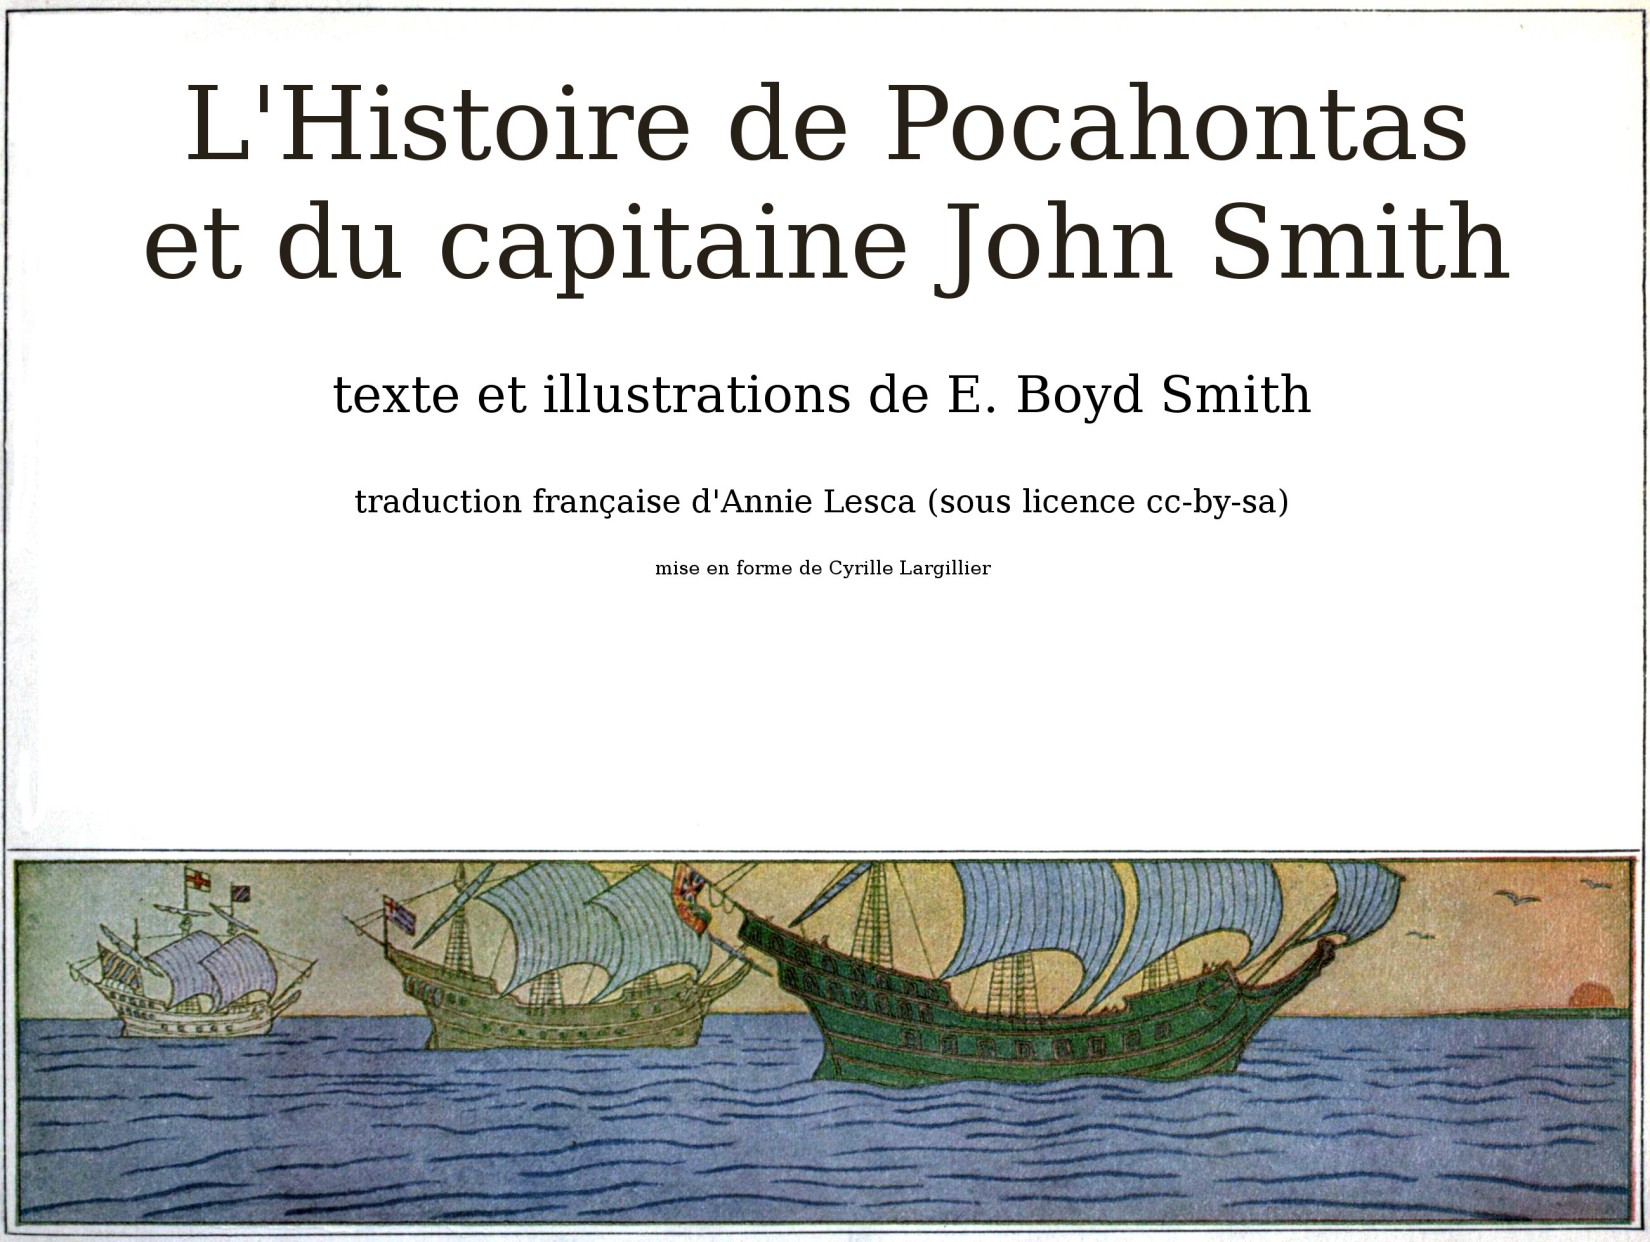 L'Histoire de Pocahontas et du capitaine John Smith